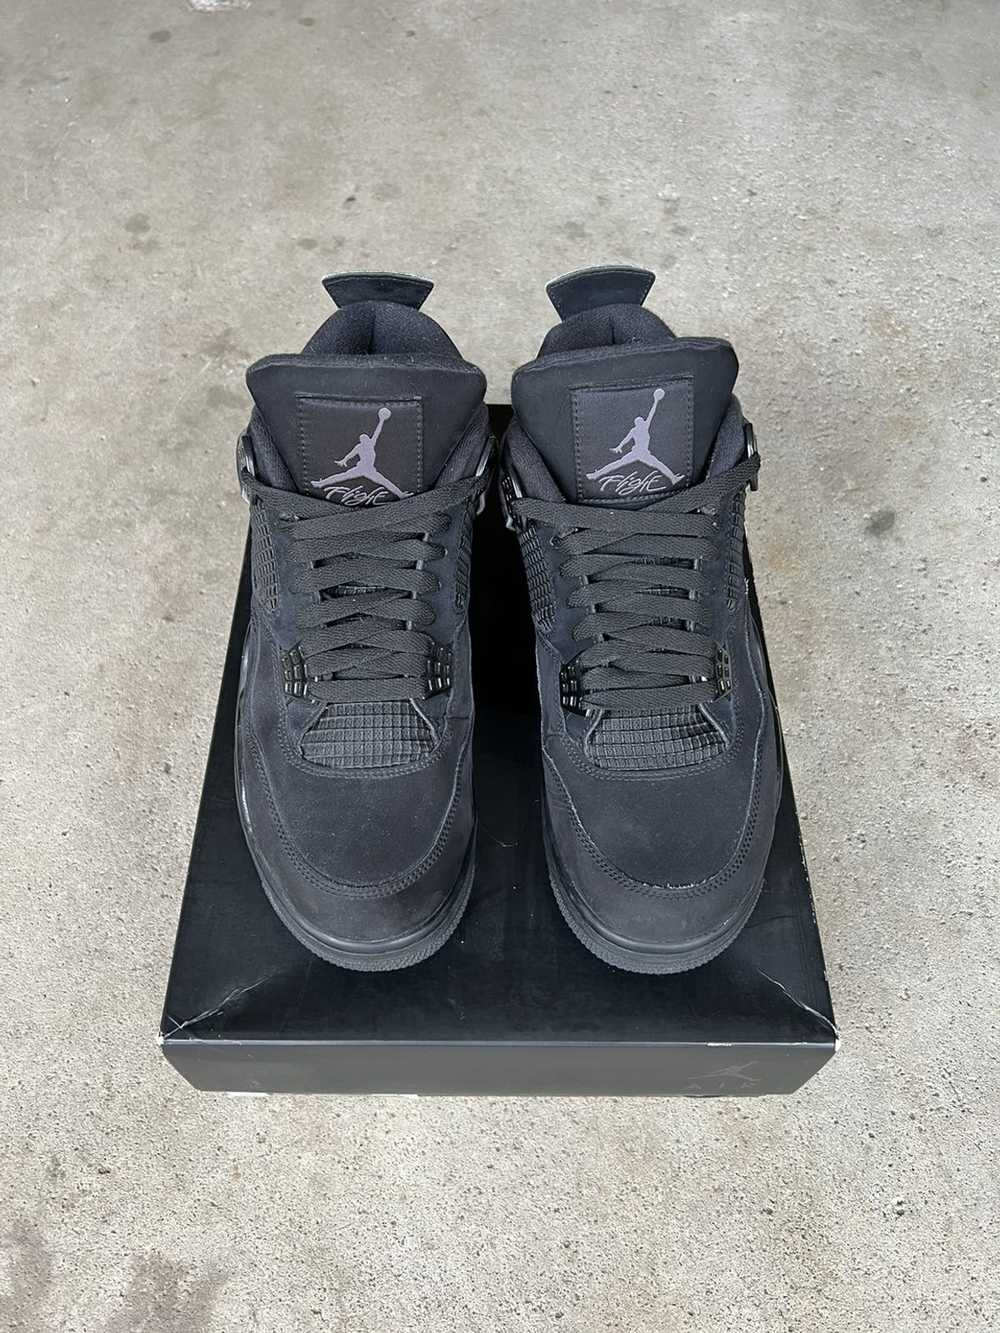 Jordan Brand Air Jordan 4 Retro Black Cat 2020 - image 1